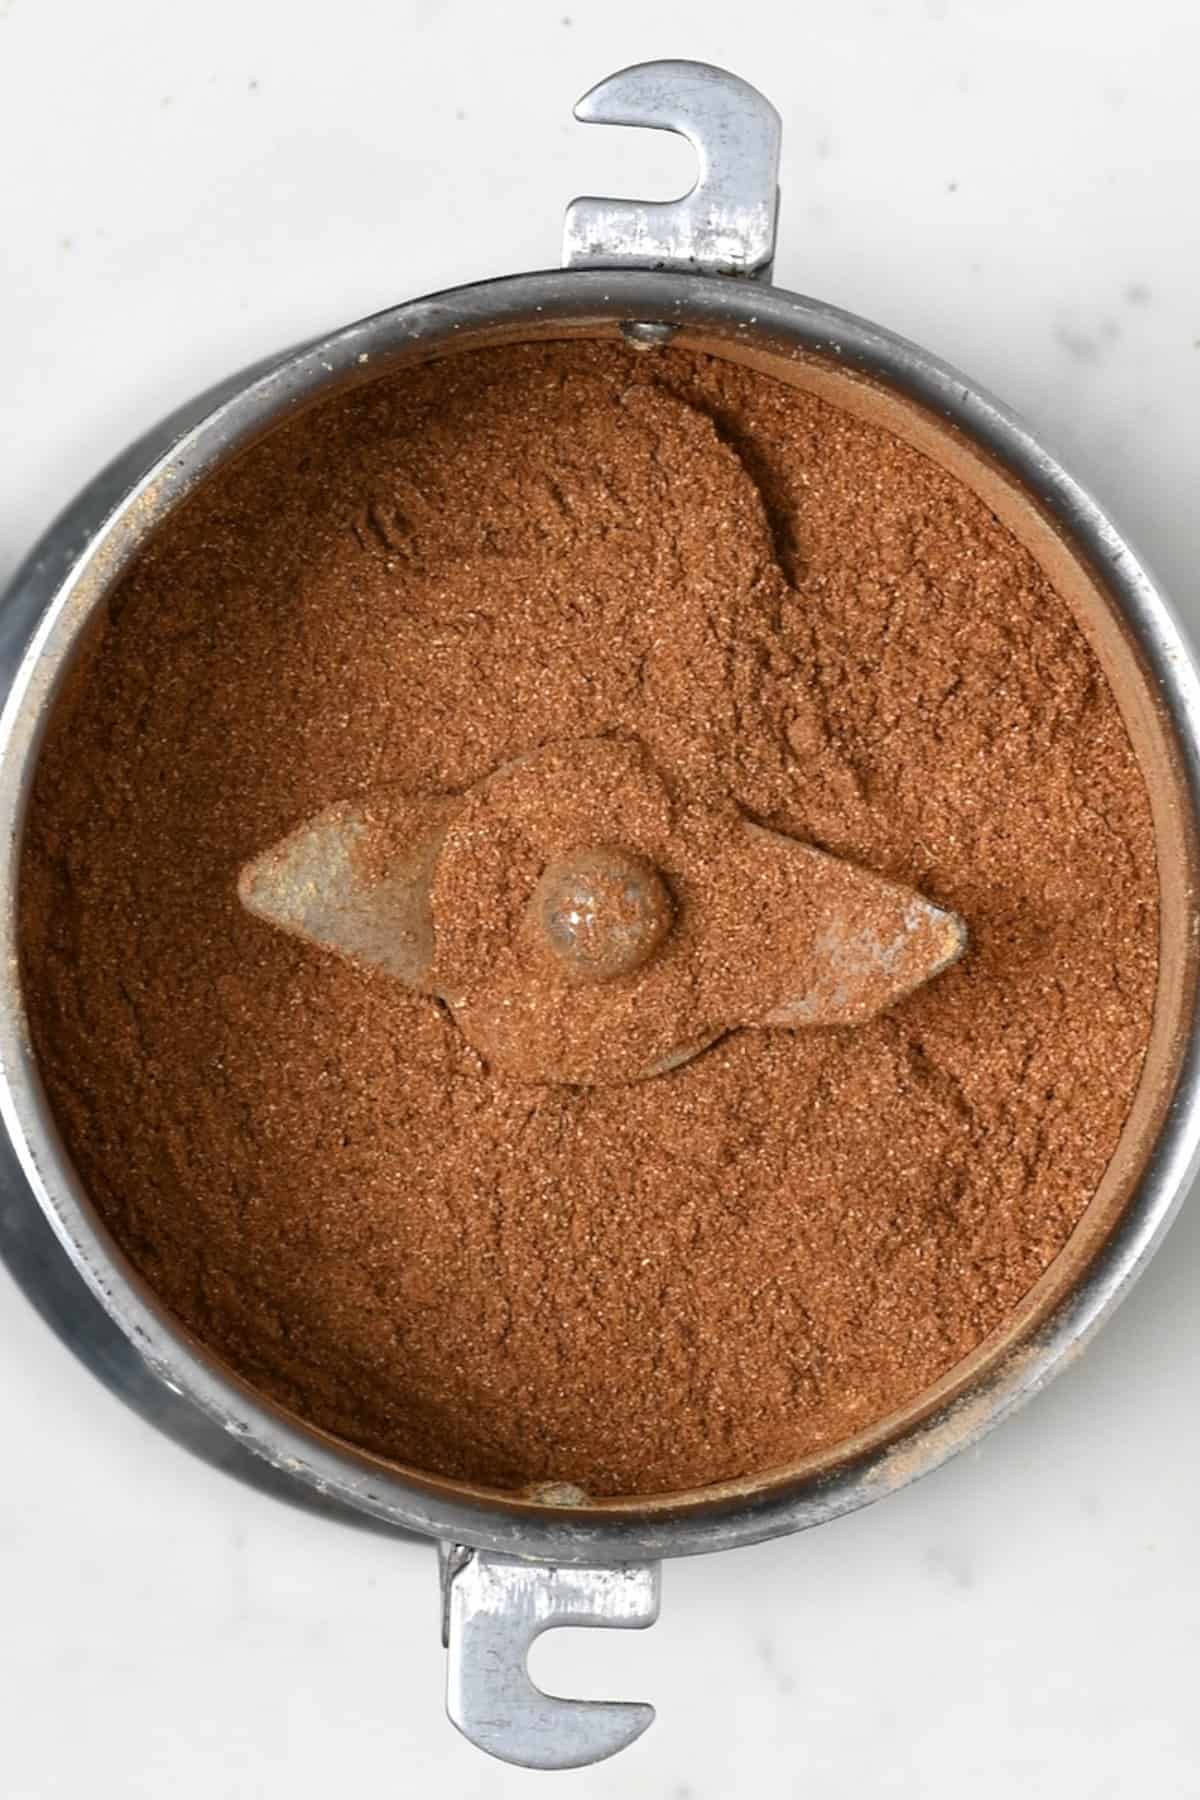 Pumpkin spice mix in a grinder